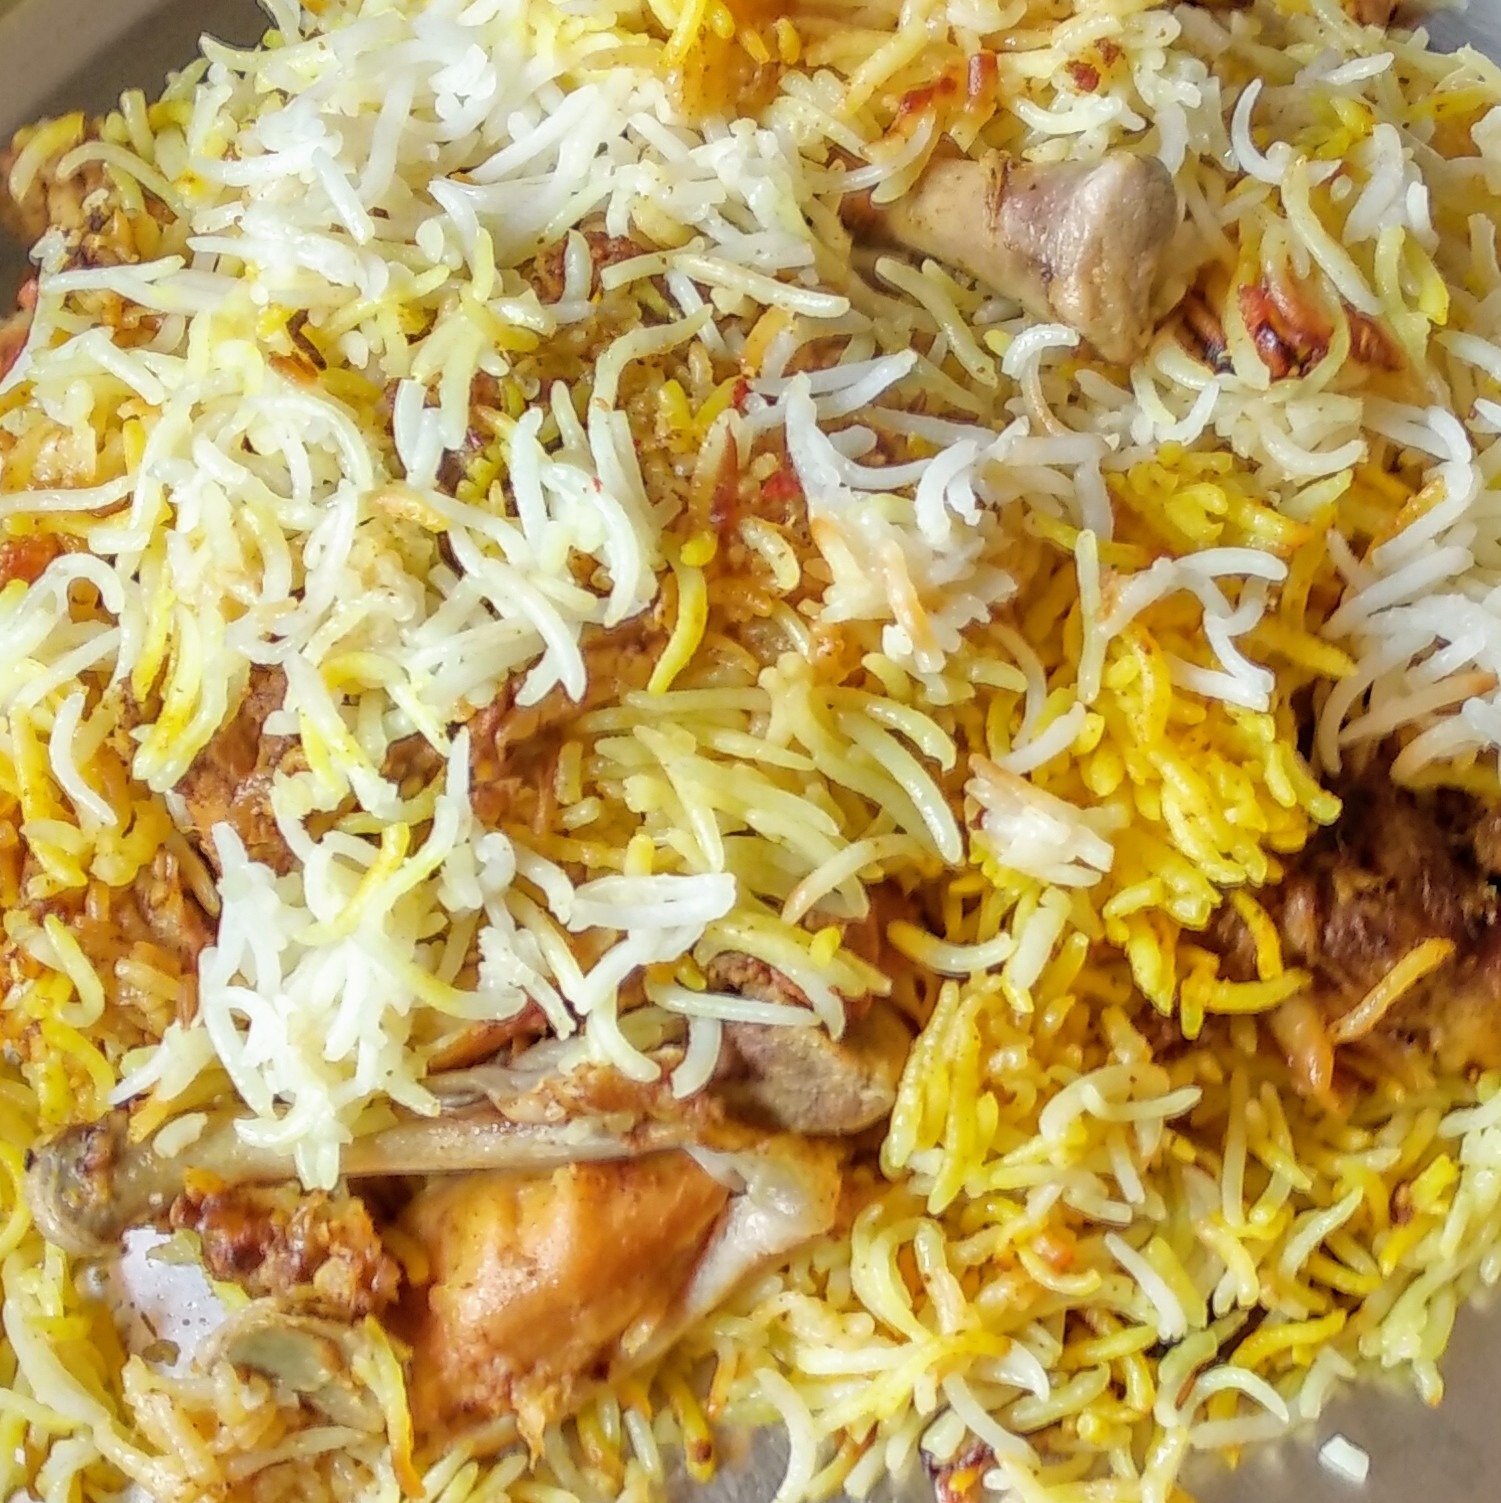 How to Make Hyderabadi Chicken Dum Biryani | Beginners' Guide